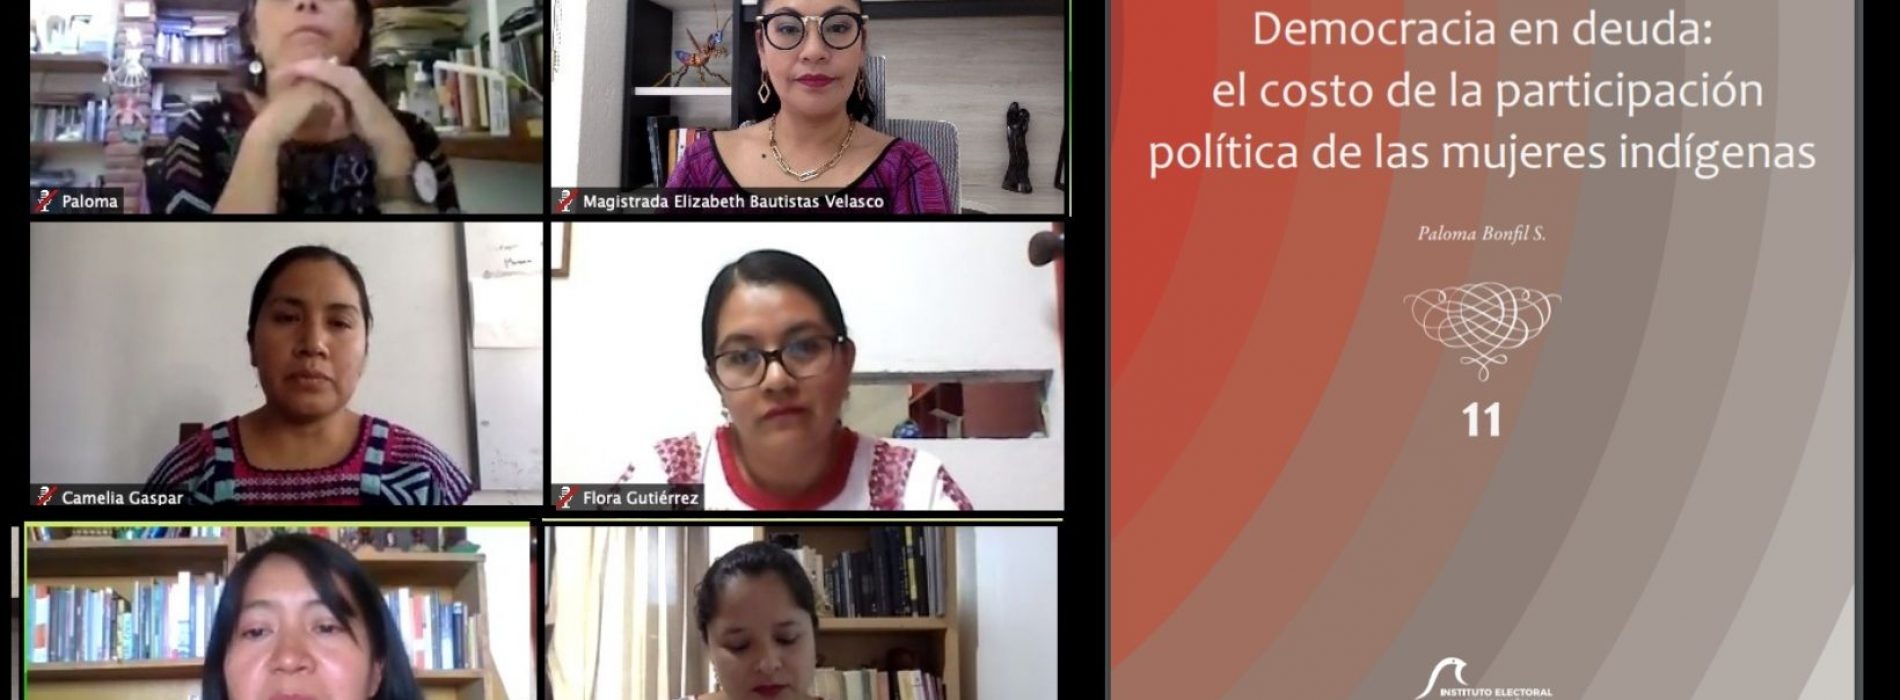 Presenta Observatorio Oaxaca el libro sobre participación política de las mujeres indígenas